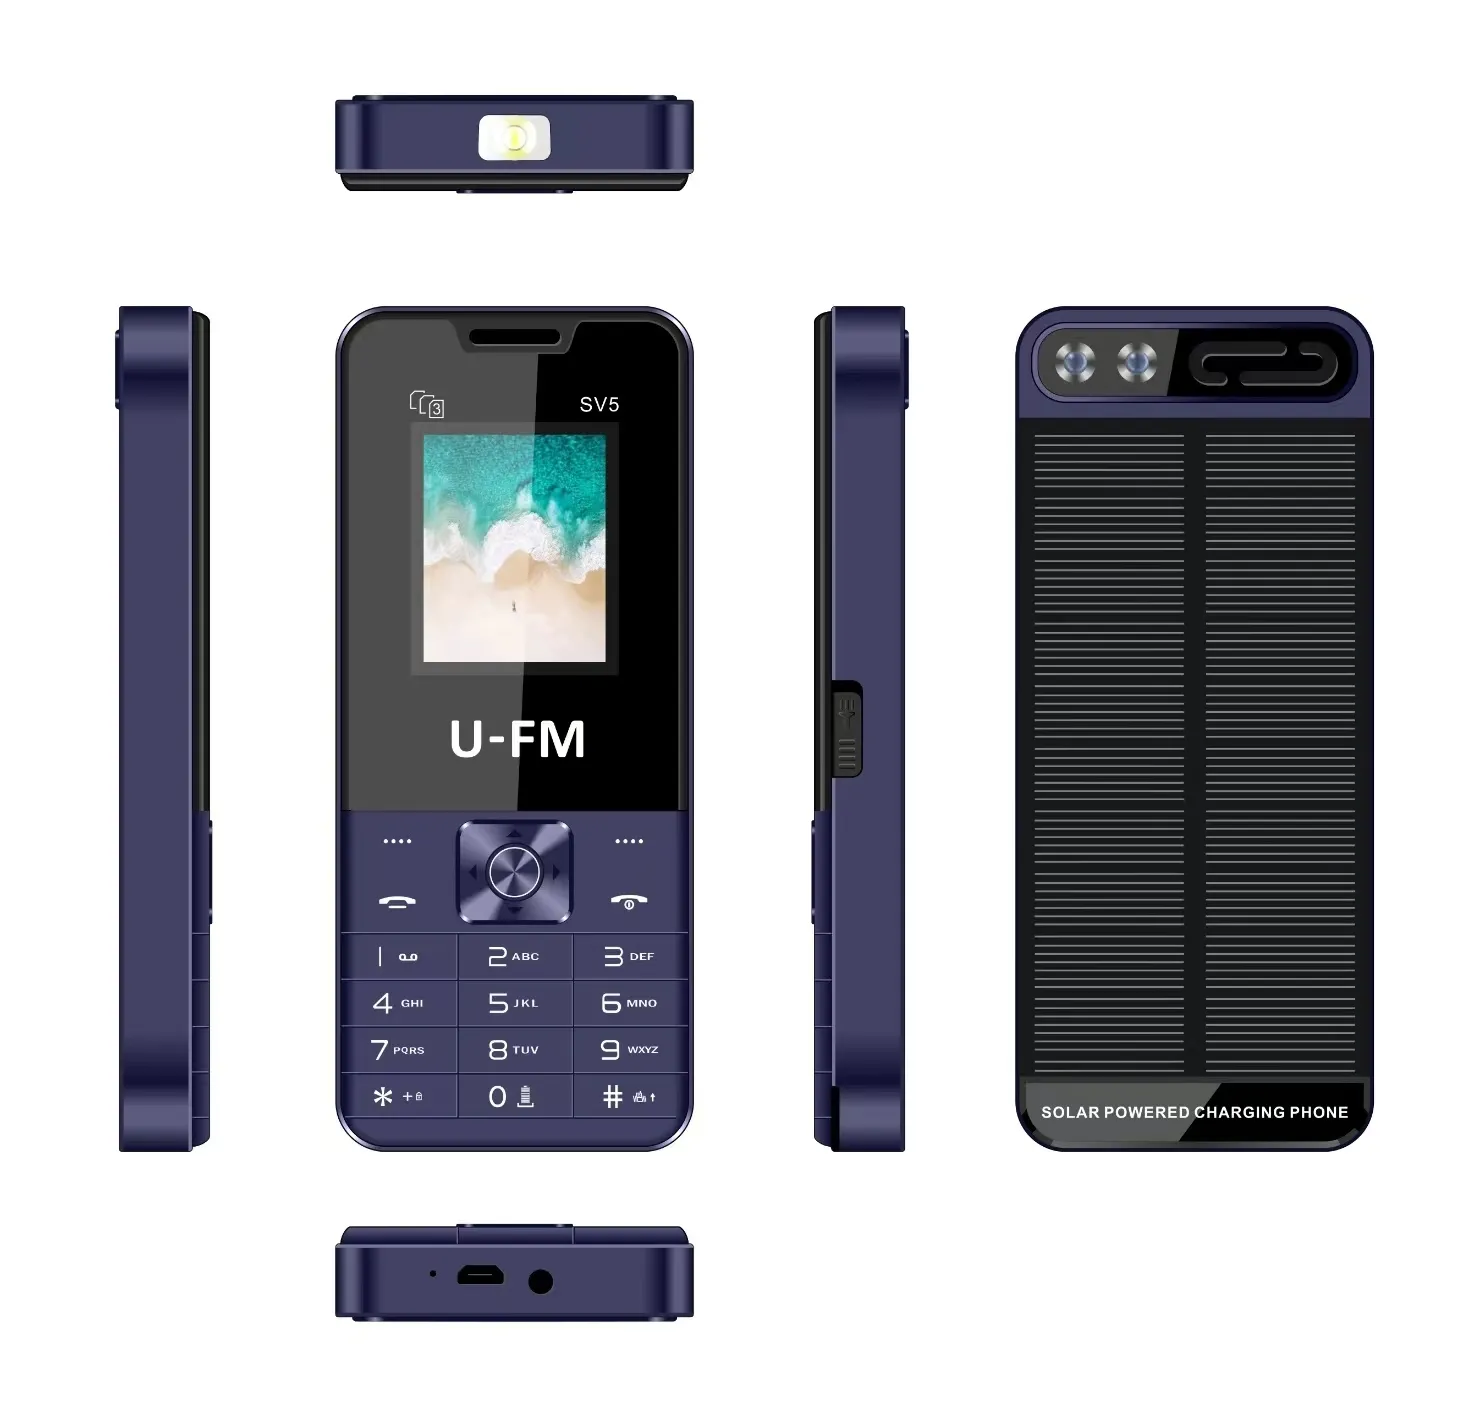 Venta al por mayor de fábrica de China, teléfonos con funciones de 1,77 pulgadas 2G Gsm con placas traseras de carga solar, teléfono